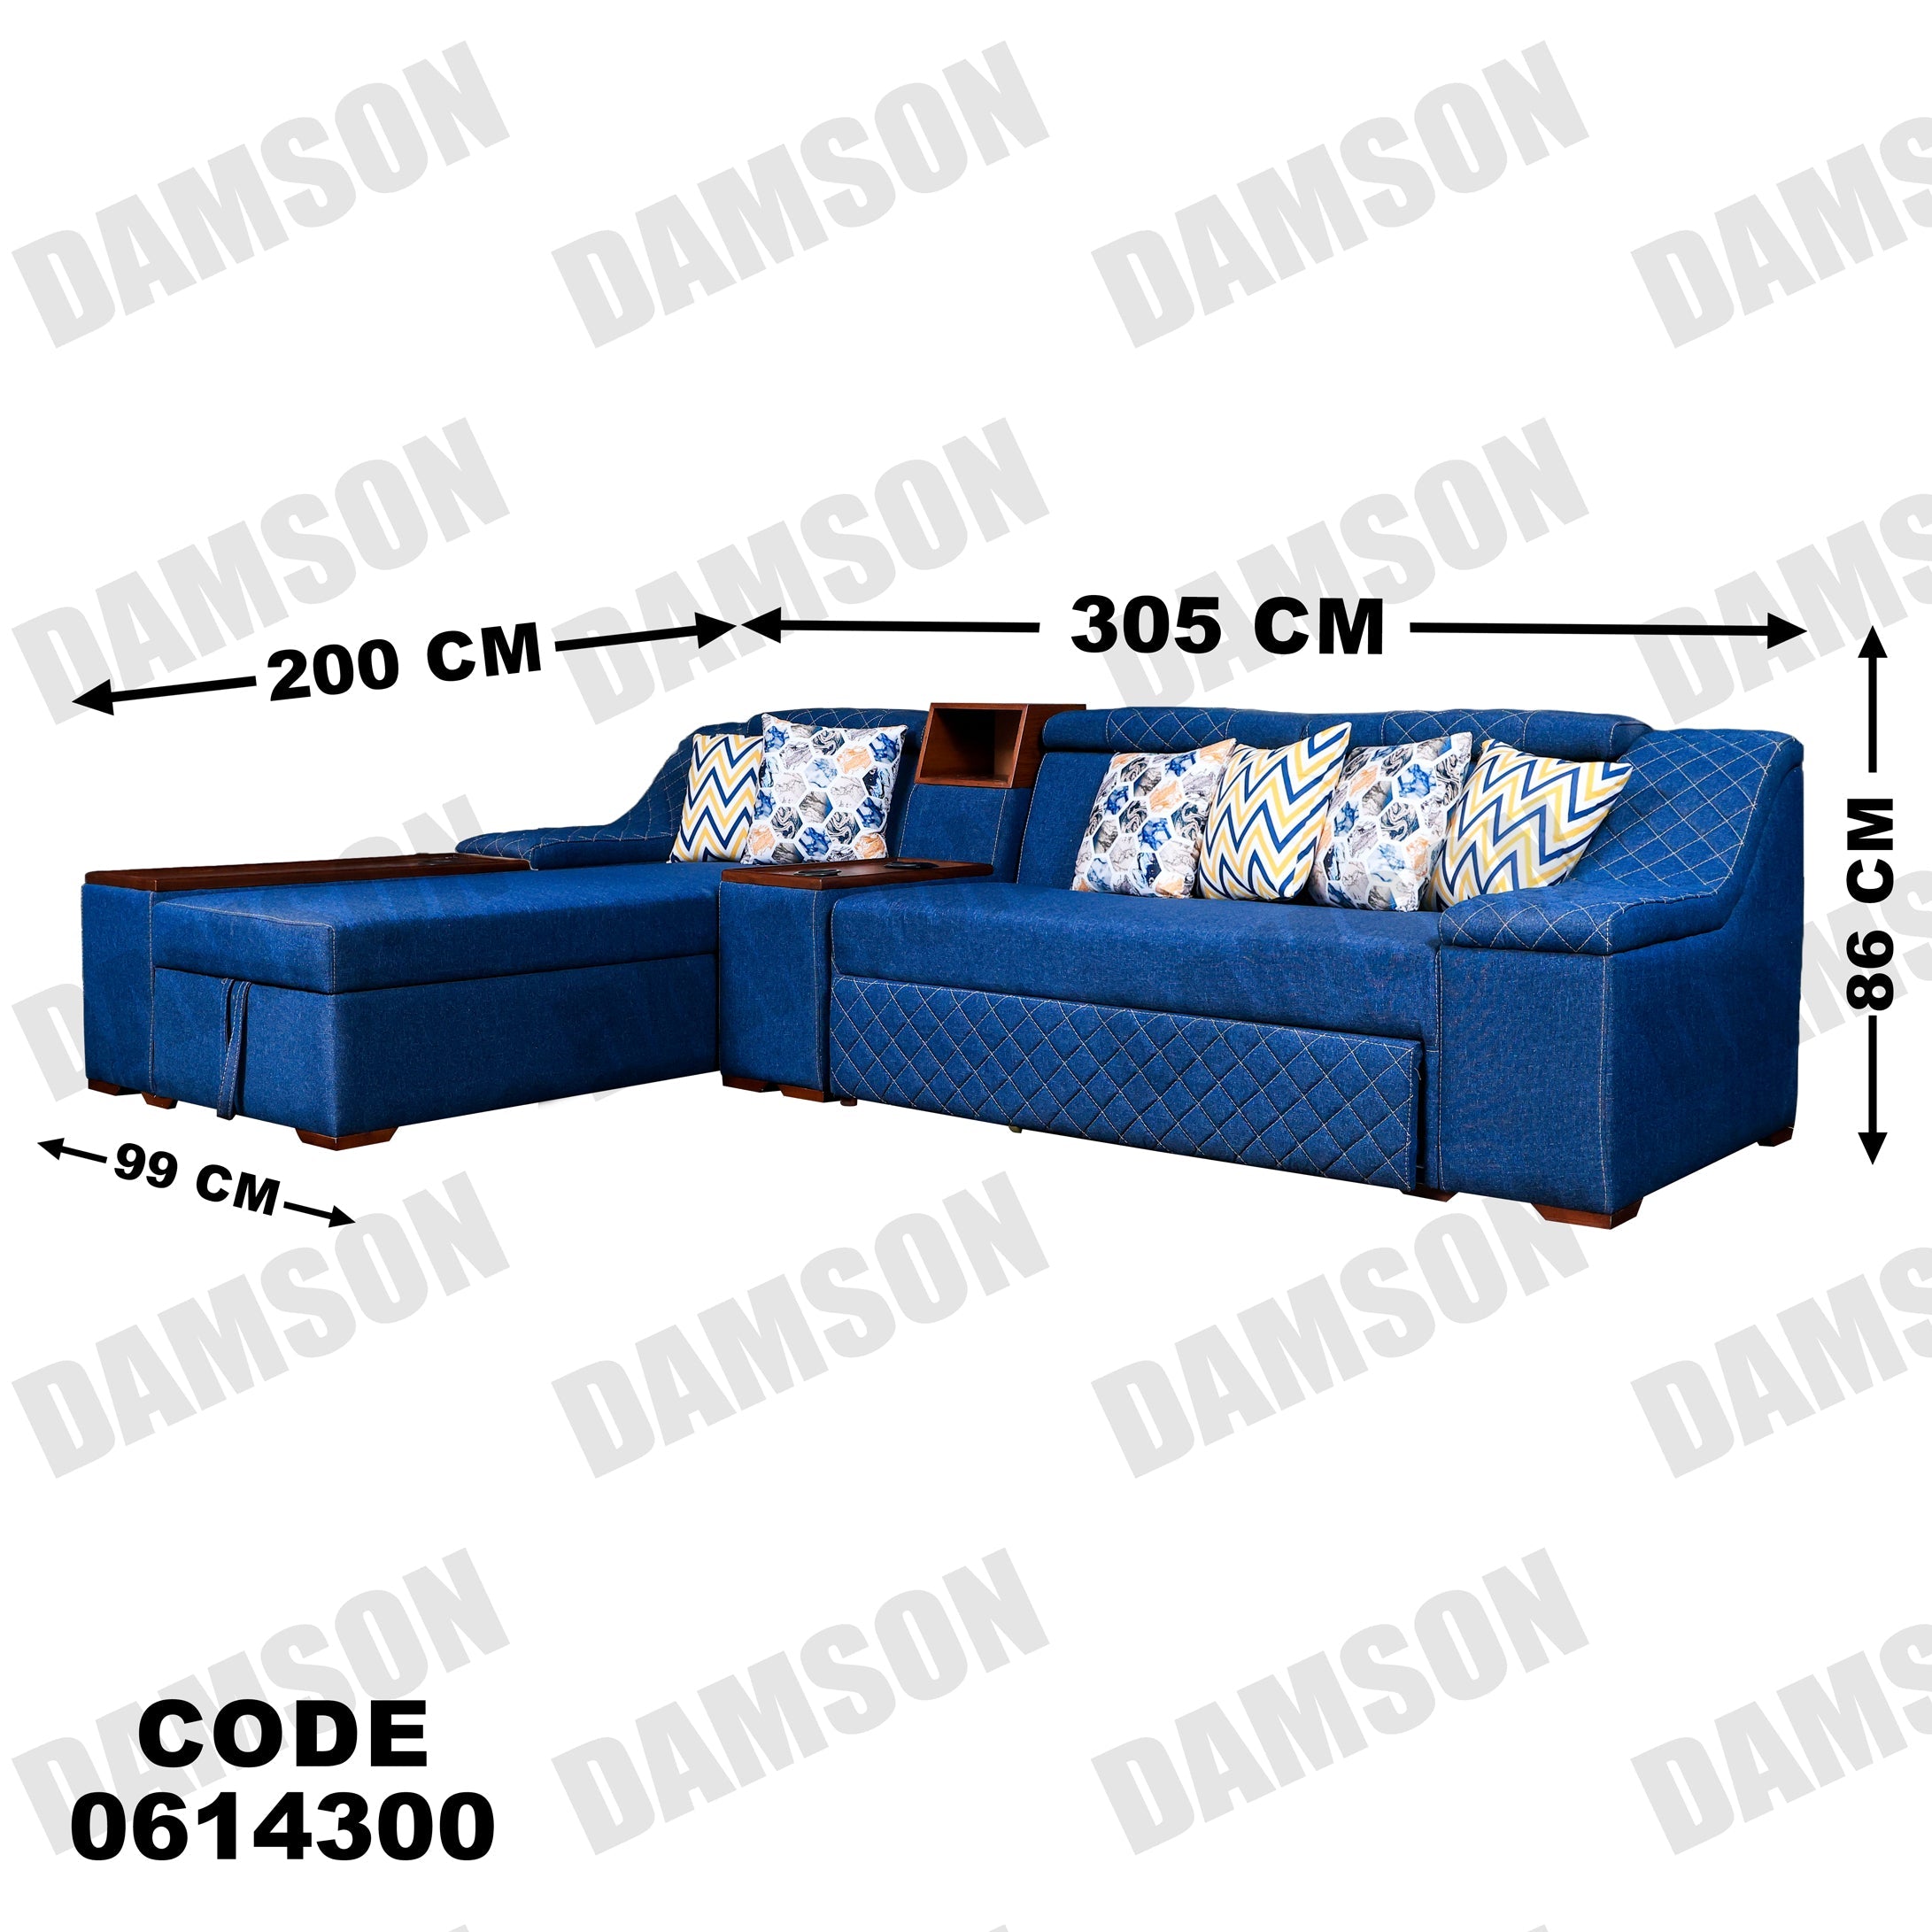 ركنة سرير و سحارة 143 - Damson Furnitureركنة سرير و سحارة 143